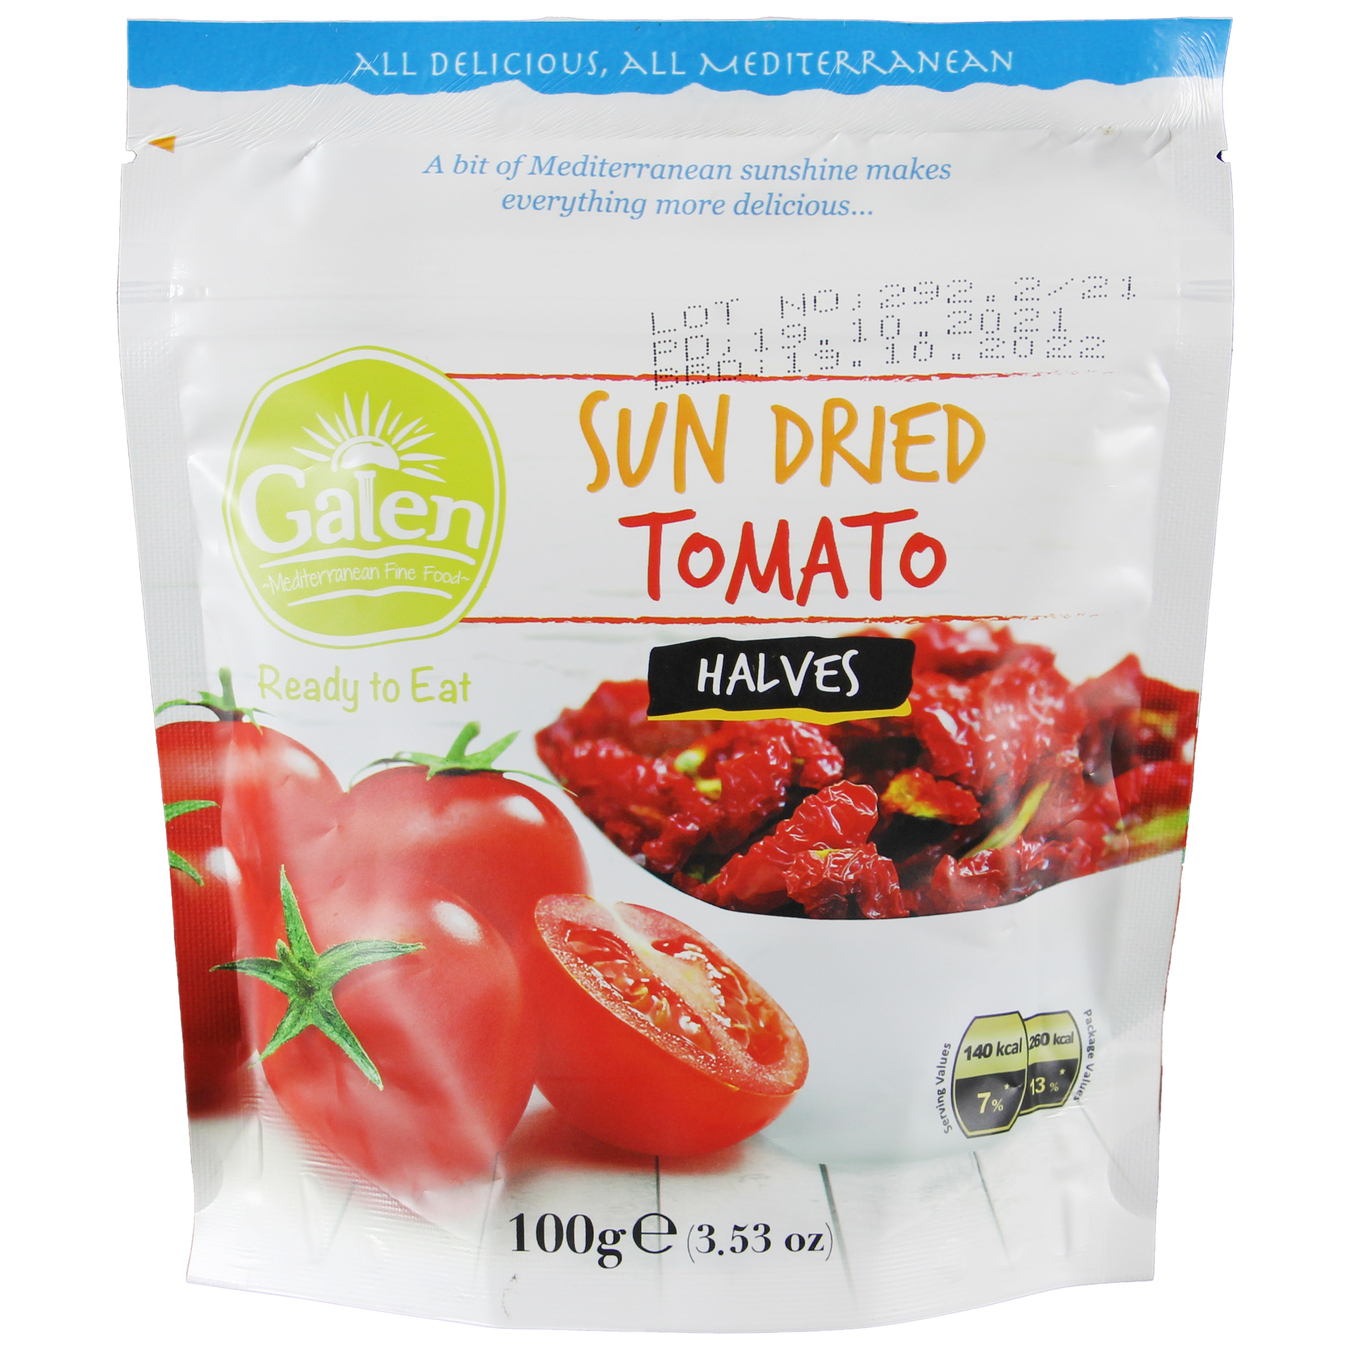 Galen Sun dried tomato 100g